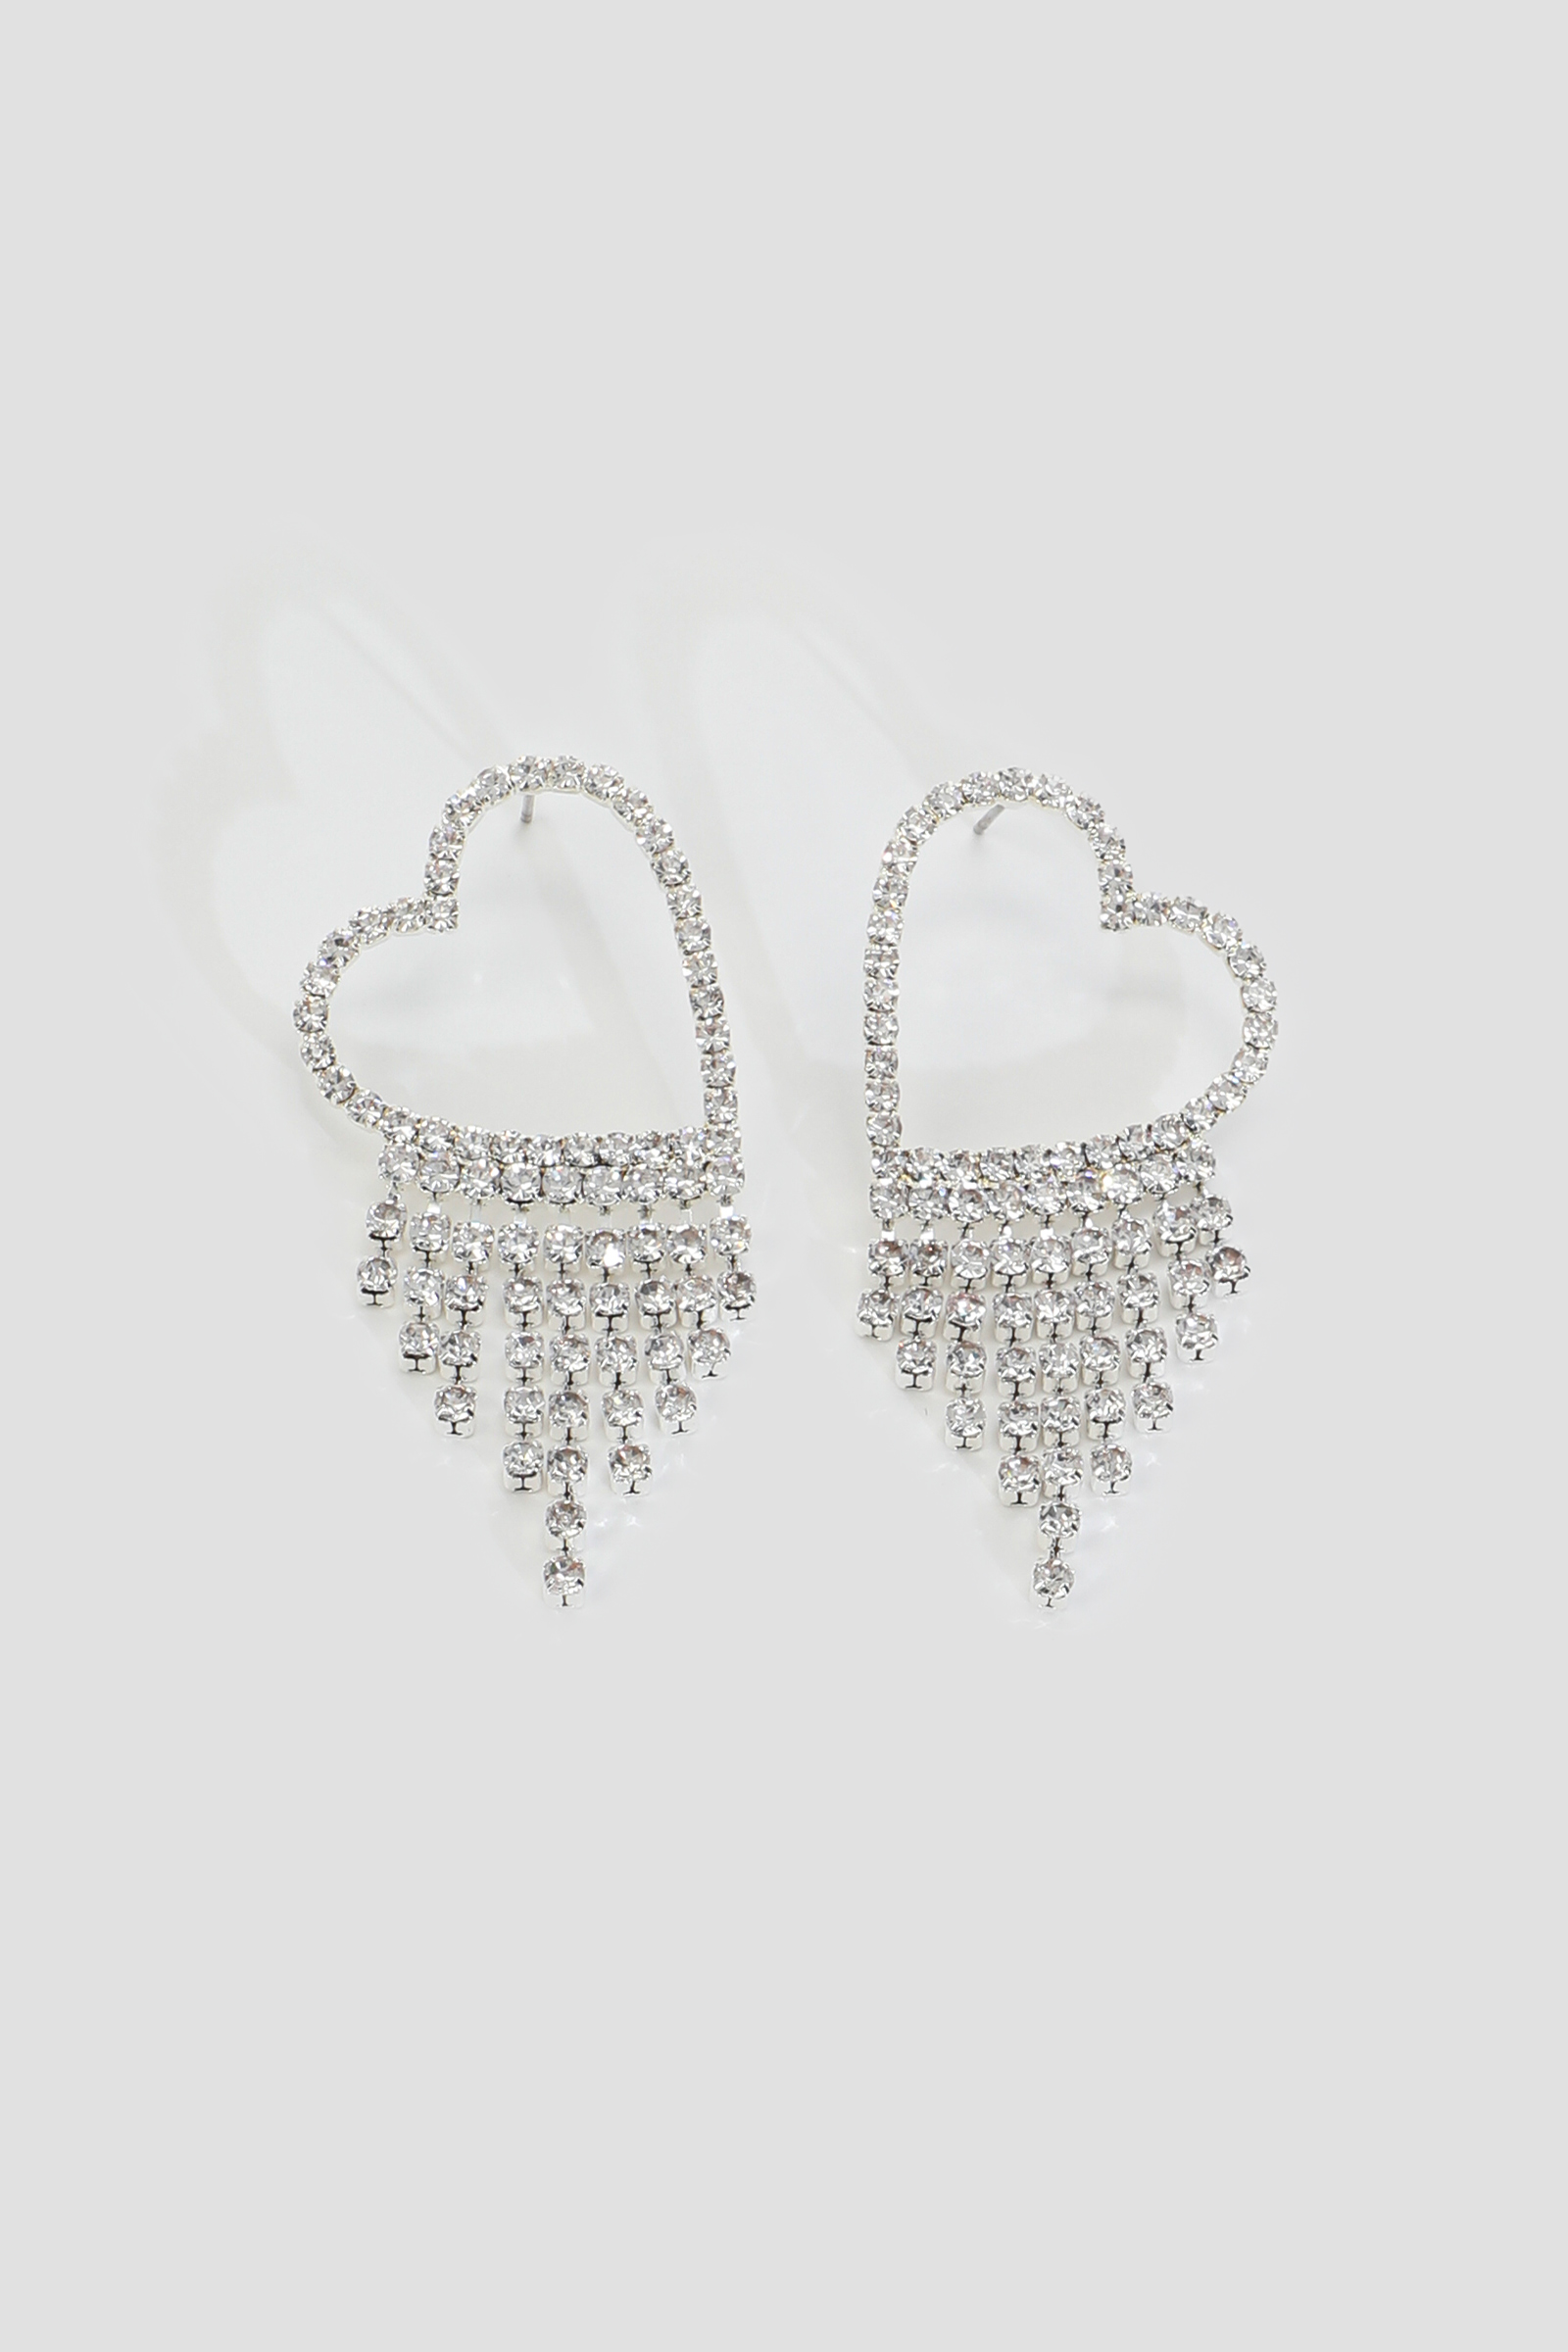 Ardene Rhinestone Heart Strand Earrings in Silver | Stainless Steel